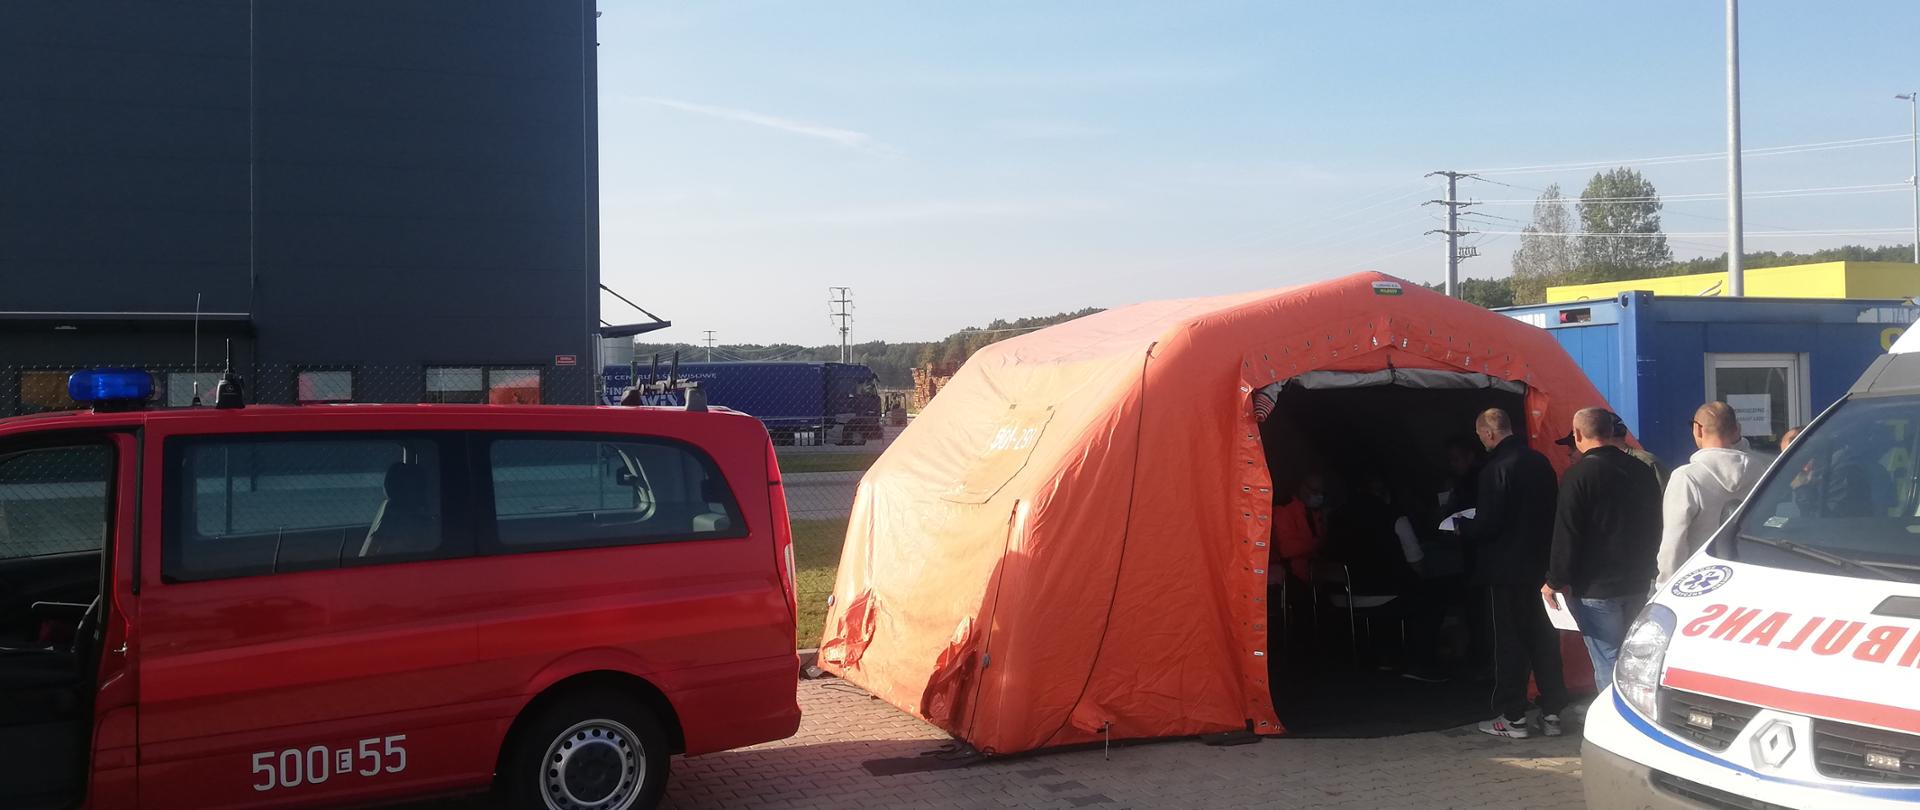 Po lewej stronie czerwony samochód straży pożarnej na tle zakładu K-FLEX Polska. Na środku zdjęcia znajduje się pomarańczowy namiot przed którym czekają osoby na szczepienie. Po prawej stronie znajduje się karetka pogotowia ratunkowego. 